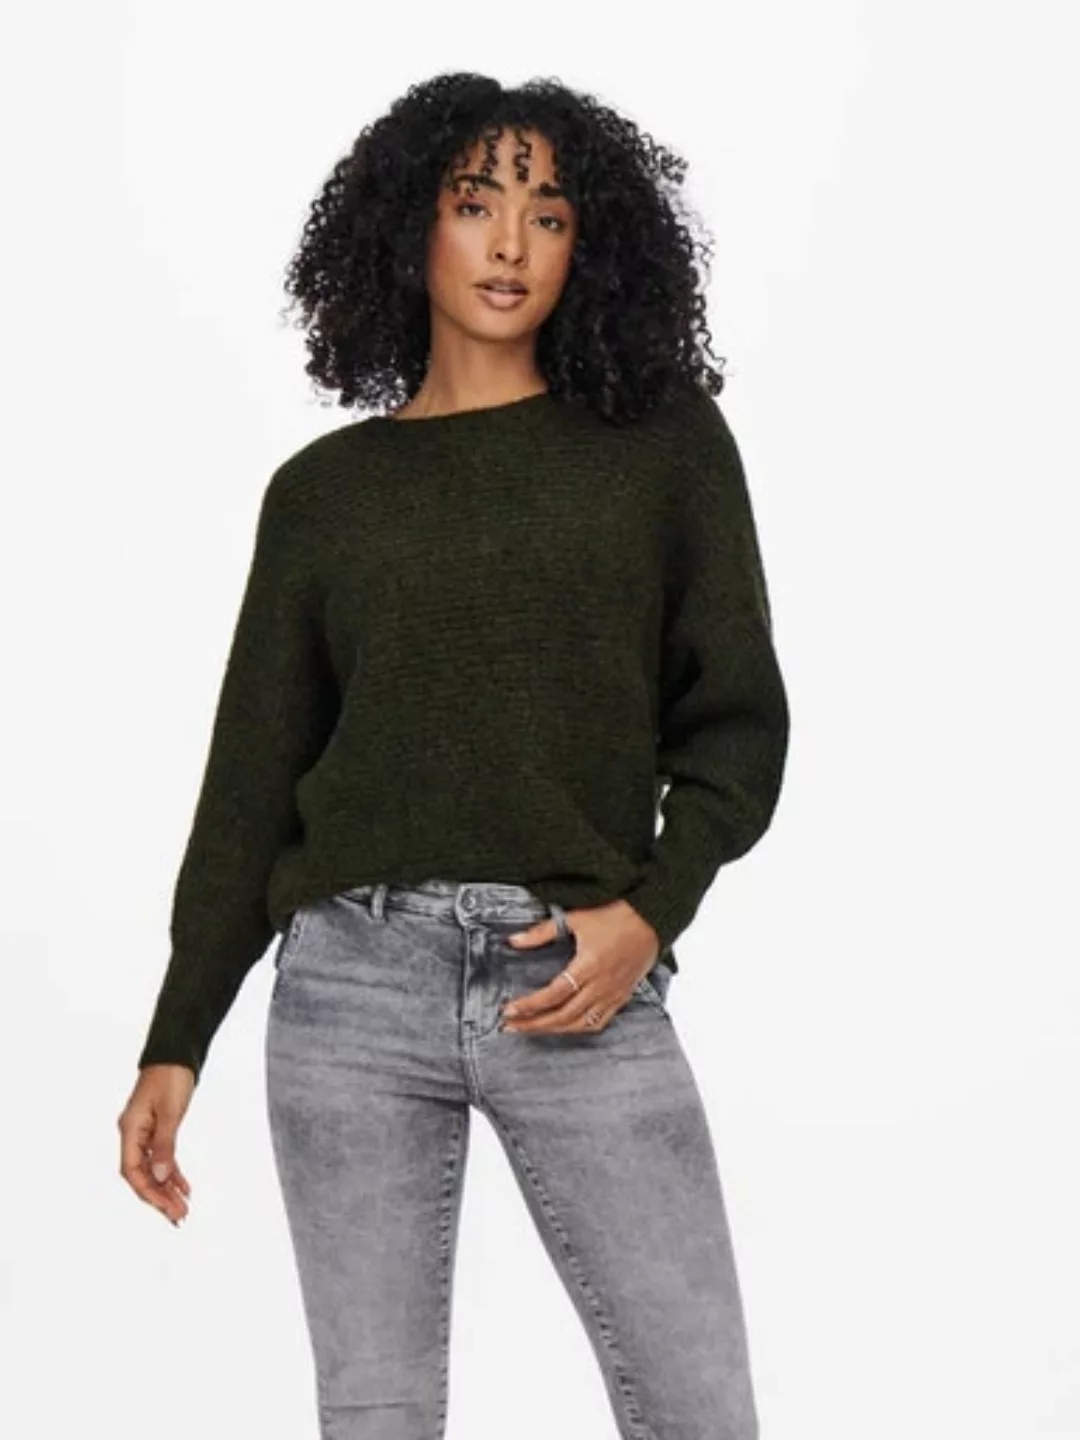 Only Daniella U-boot-ausschnitt Sweater XL Major Brown / Detail Melange günstig online kaufen